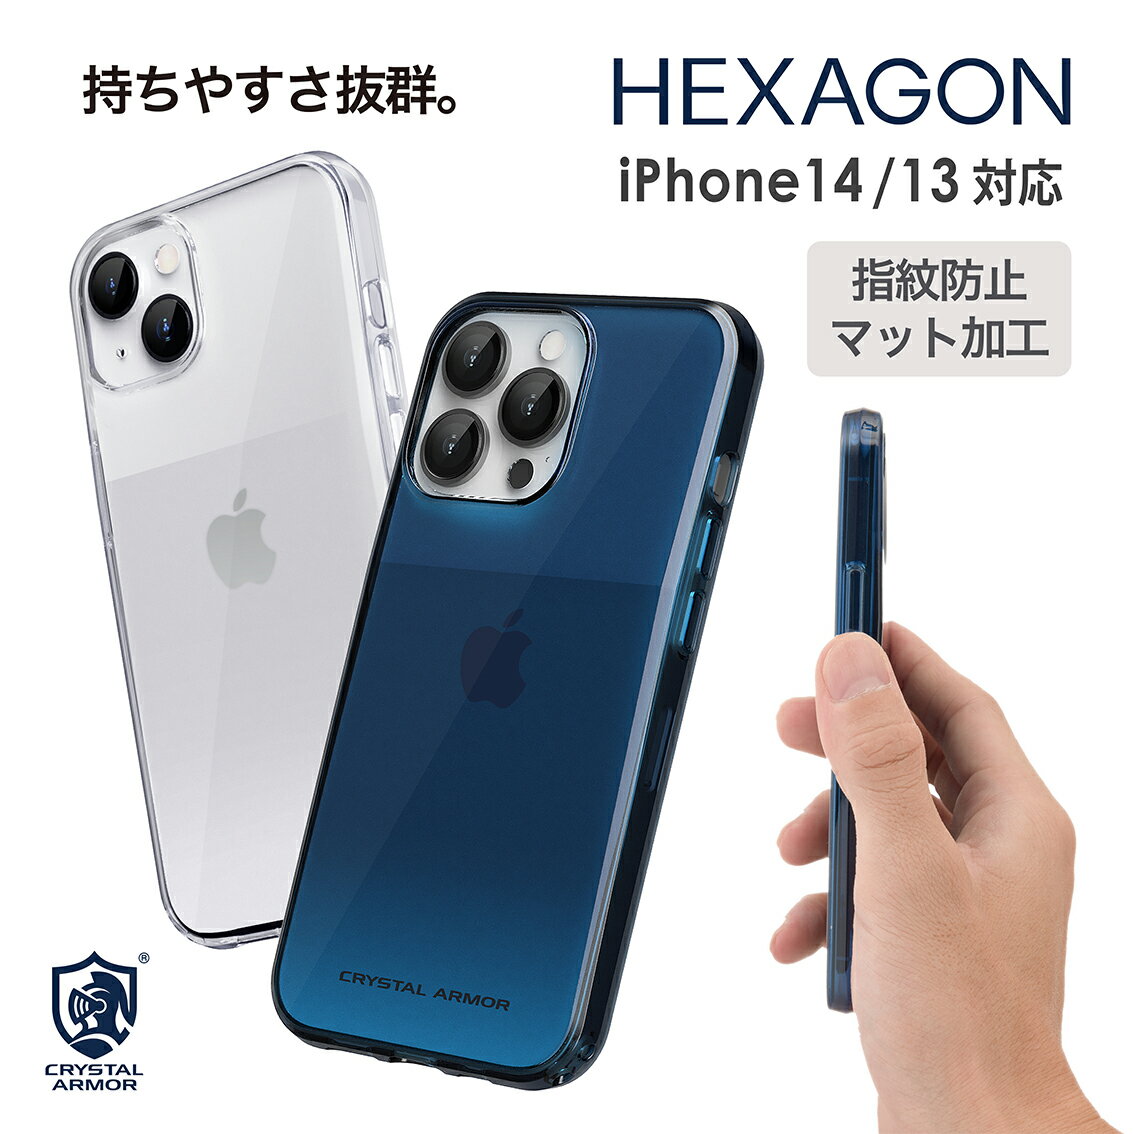 iPhone 14 14 Pro 2022年モデル iPhone 13 13 Pro 2021年モデル スマホケース クリア マット加工 HEXAGON クリスタルアーマー 持ちやすい 透明 シンプル スマホ スマートフォン スマフォケース…